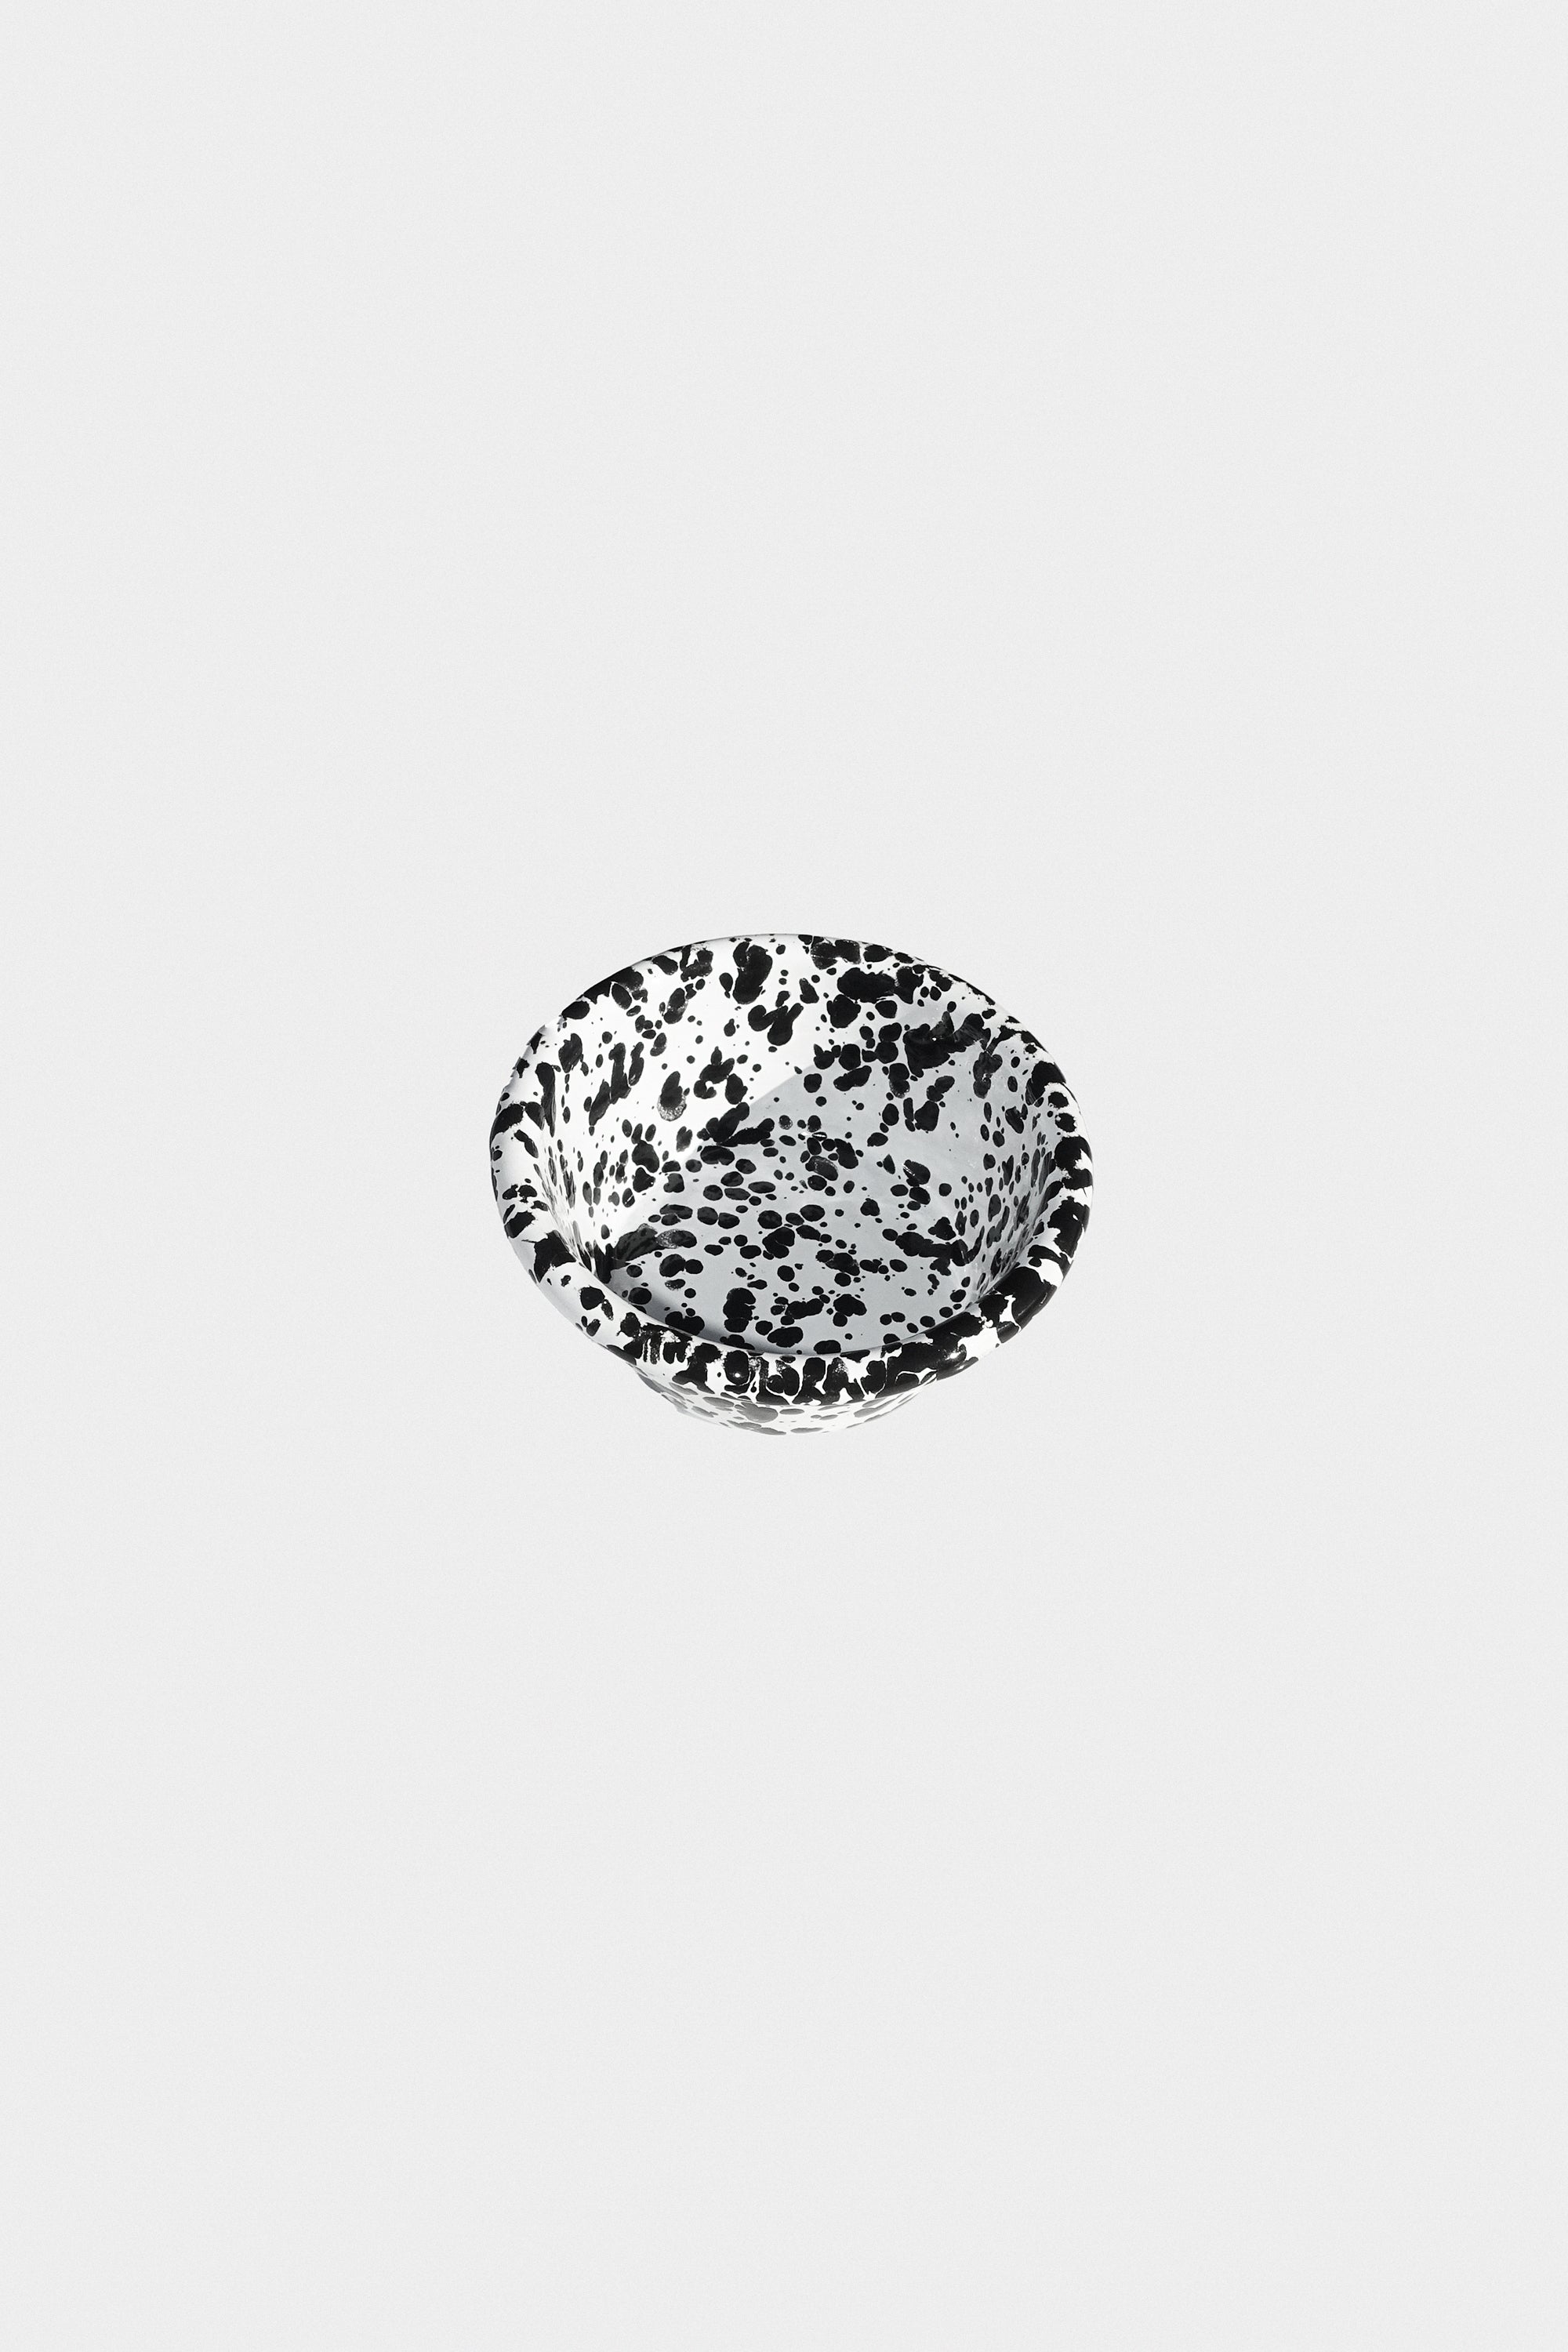 Small Ramekin in Black Splatter Enamelware